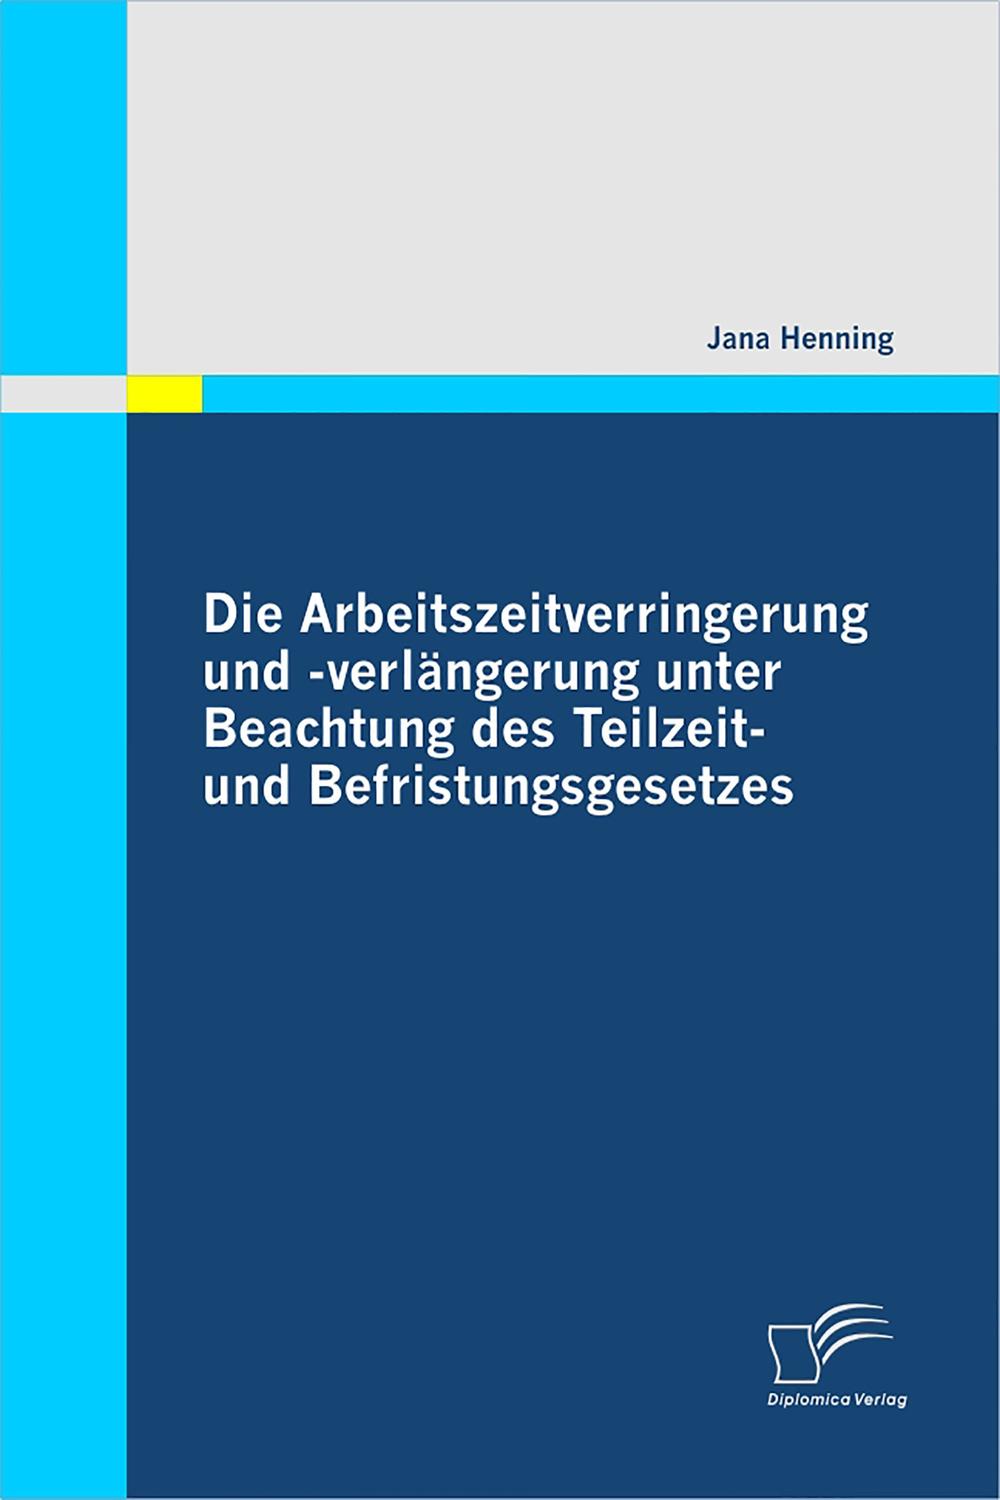 Die Arbeitszeitverringerung und -verlängerung unter Beachtung des Teilzeit- und Befristungsgesetzes - Jana Henning